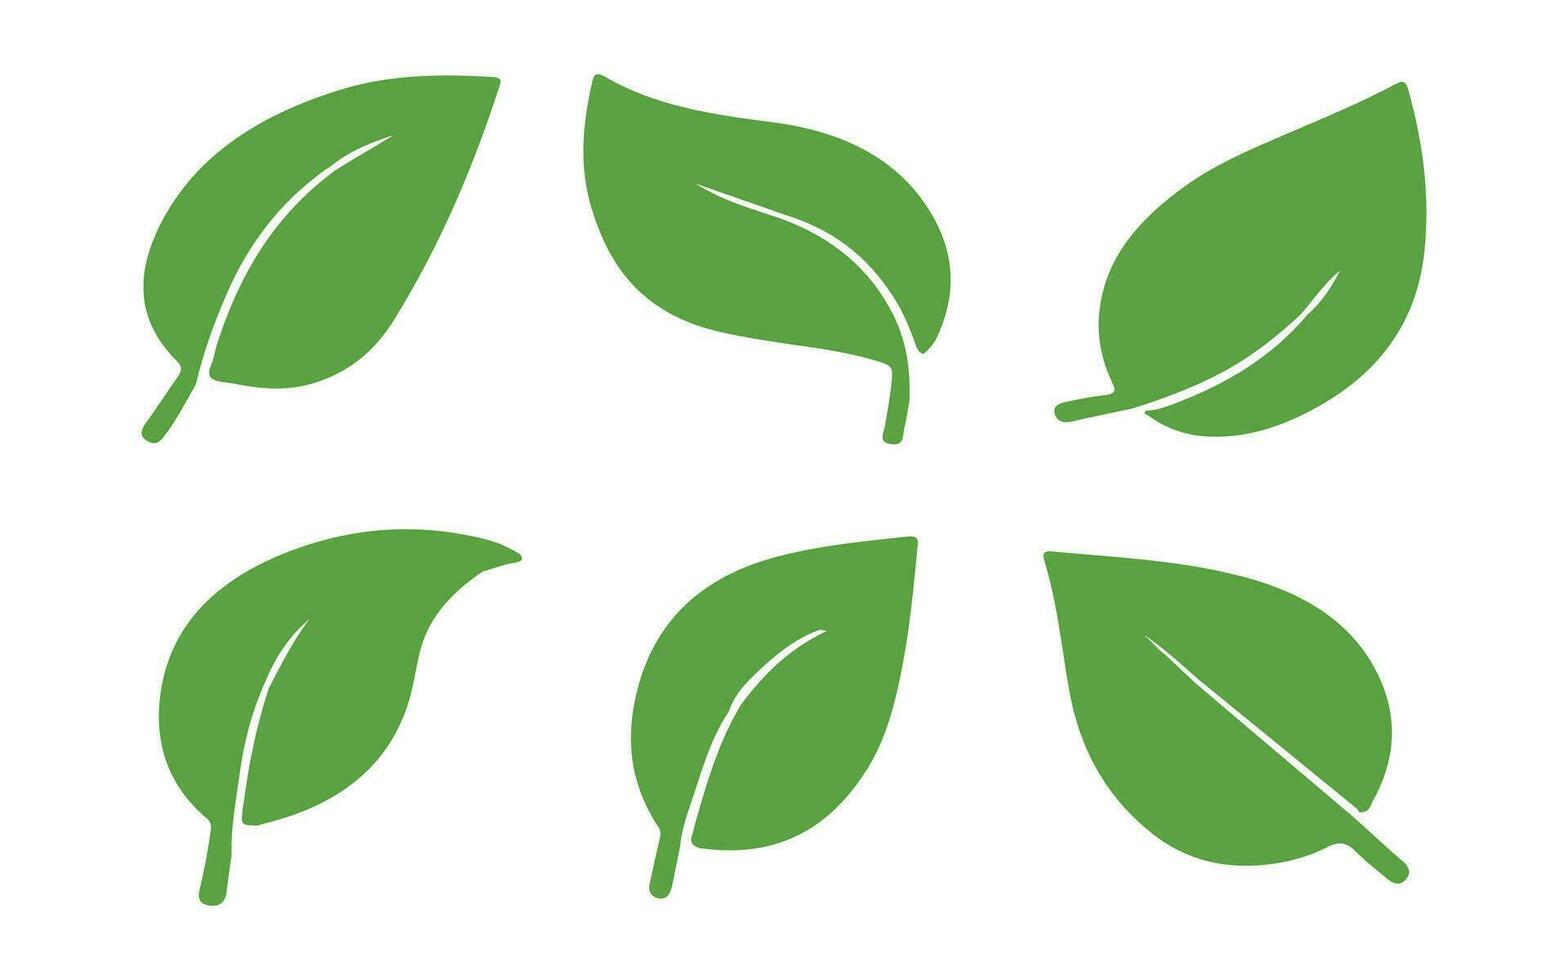 laisse jeu de vecteurs d'icônes isolé sur fond blanc. diverses formes de feuilles vertes d'arbres et de plantes. éléments pour logos éco et bio. vecteur